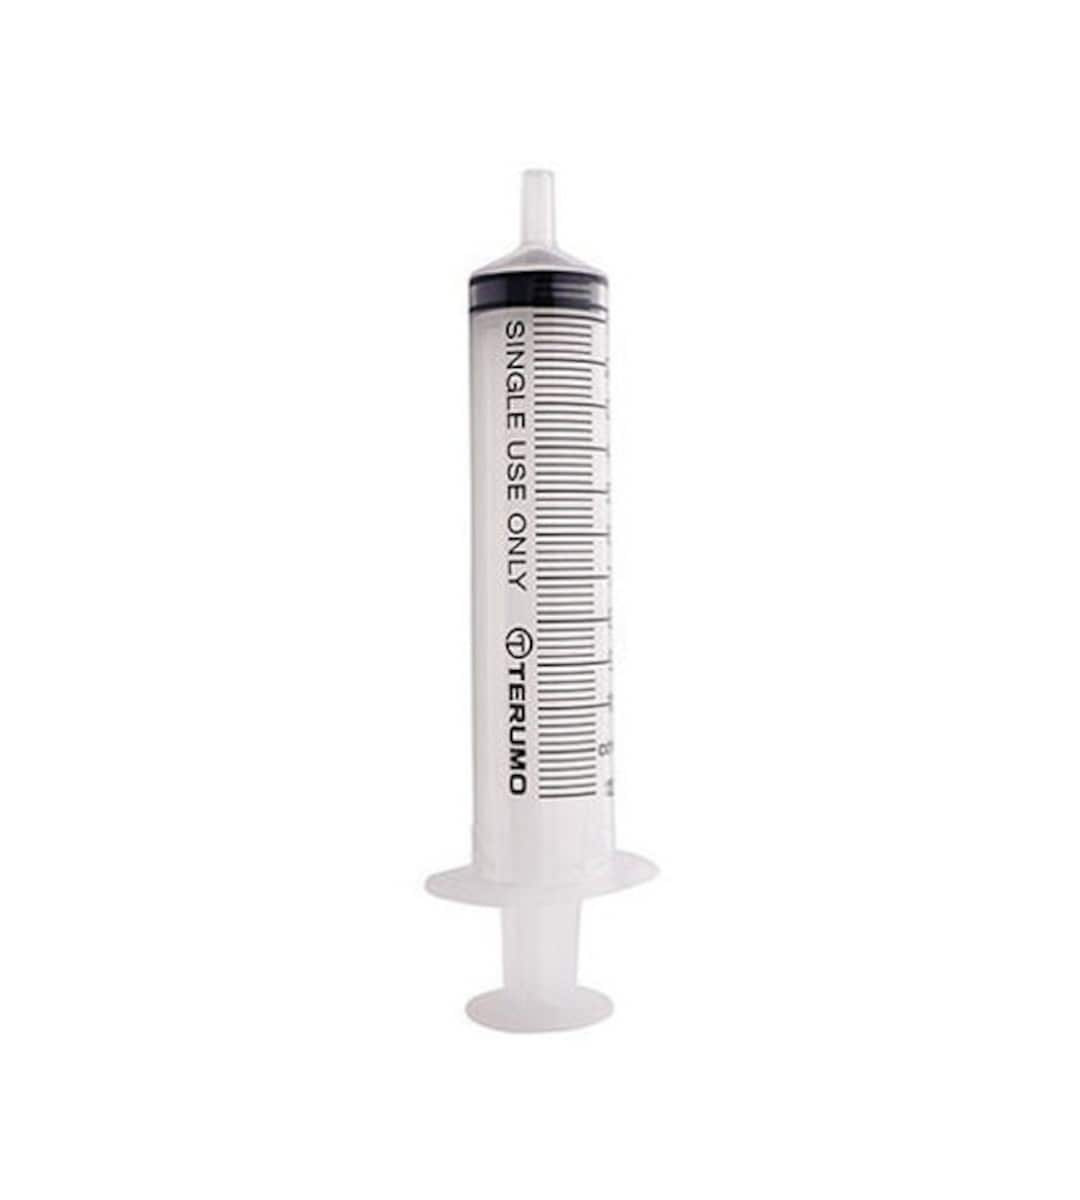 Syringe Plastic No Needle 5ml 100 Pack